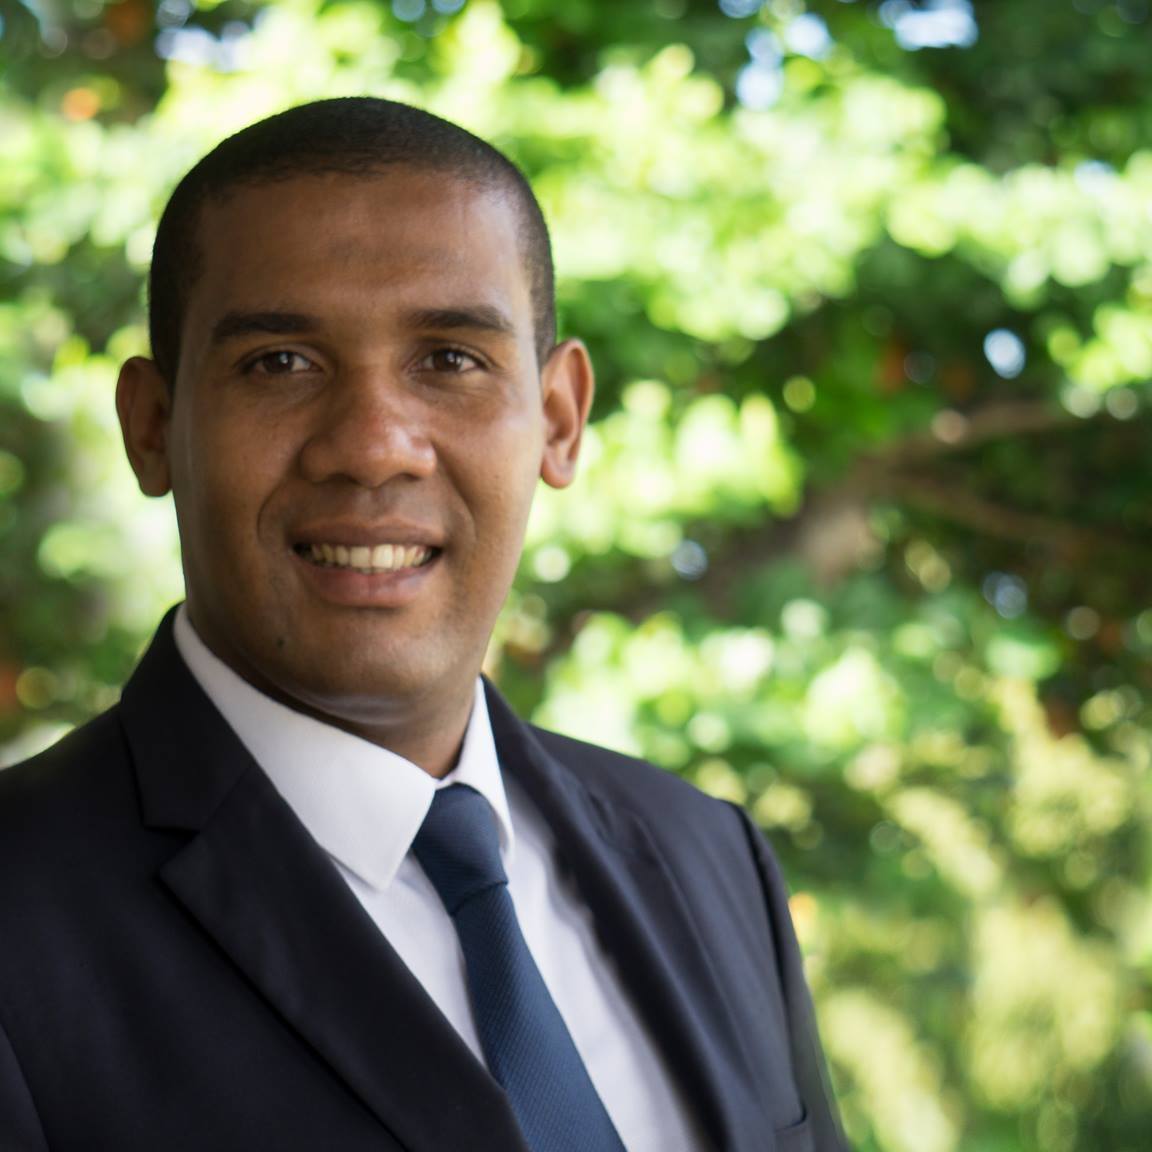 Législatives 2017: A Mayotte, Elad Chakrina le candidat (LR) vaincu va déposer un recours auprès du Conseil Constitutionnel